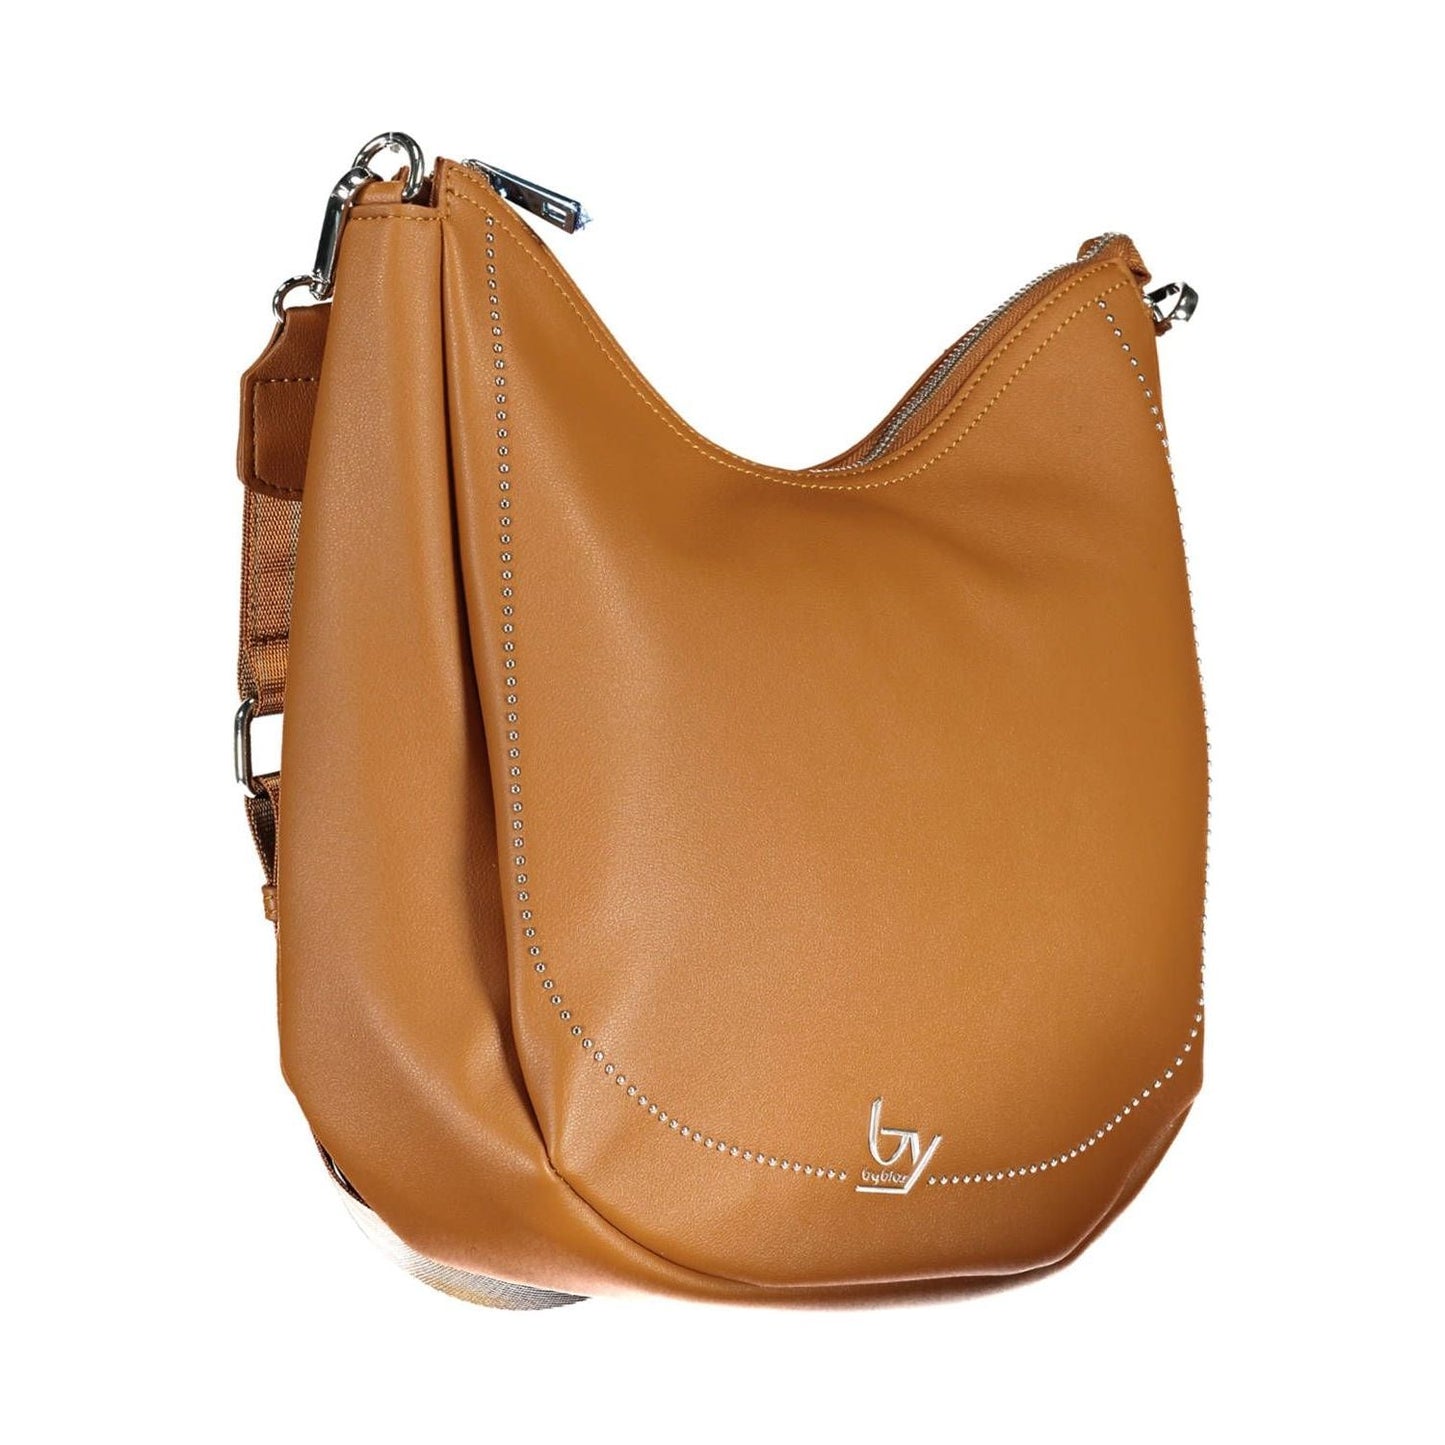 BYBLOS | Chic Brown Handbag with Contrasting Details| McRichard Designer Brands   